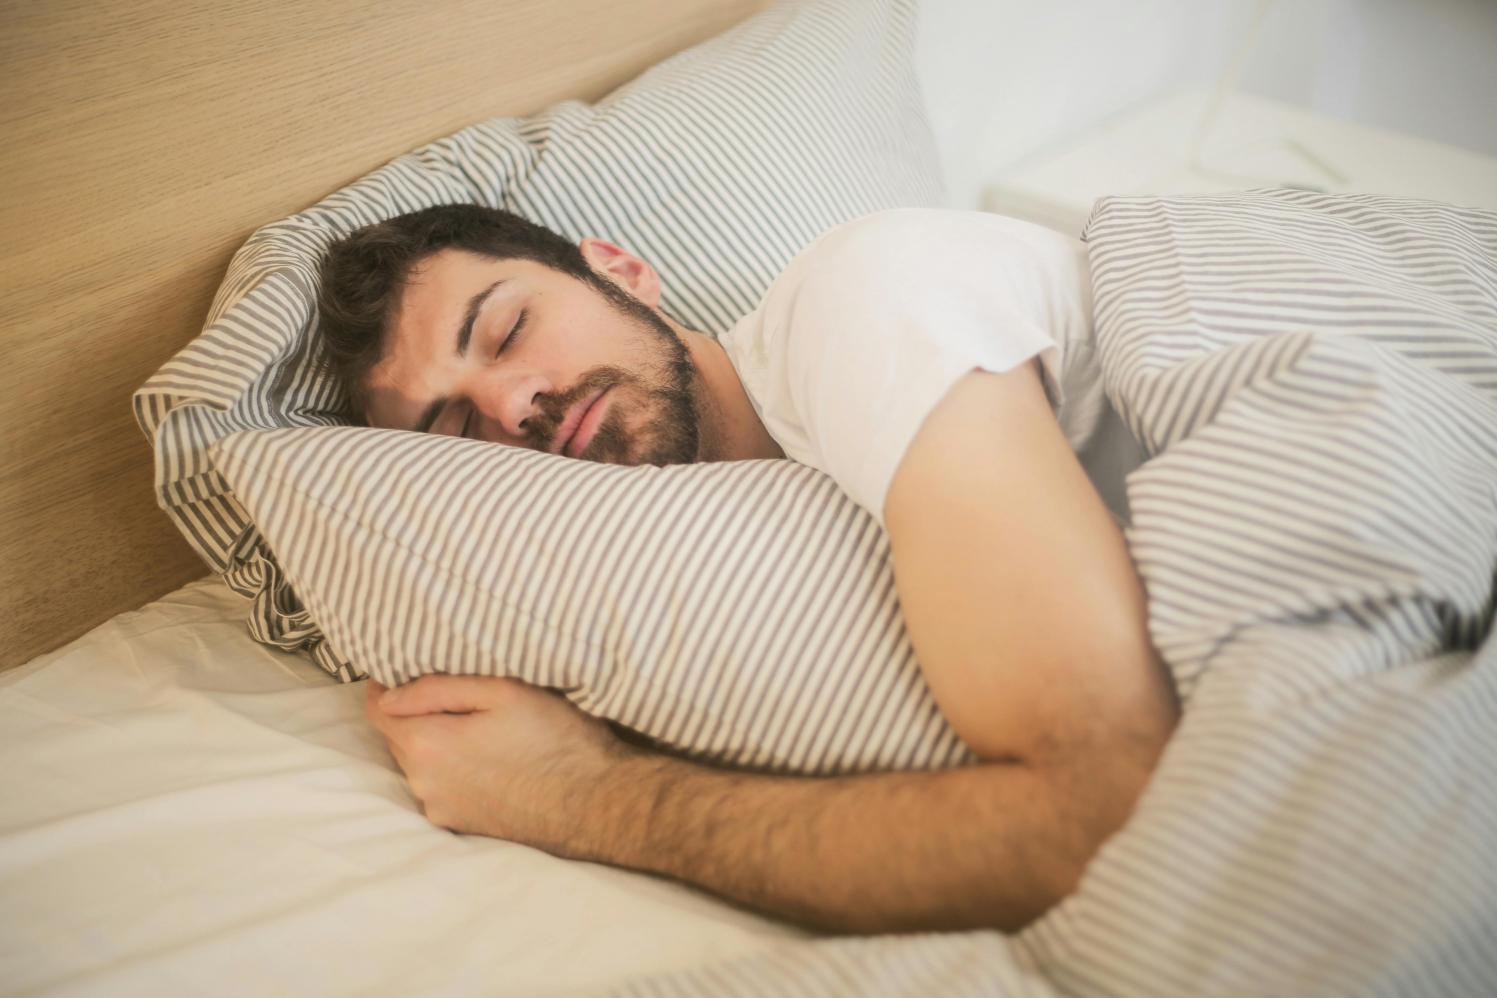  Dormir com ventilador ligado pode desenvolver doenças, alerta especialista